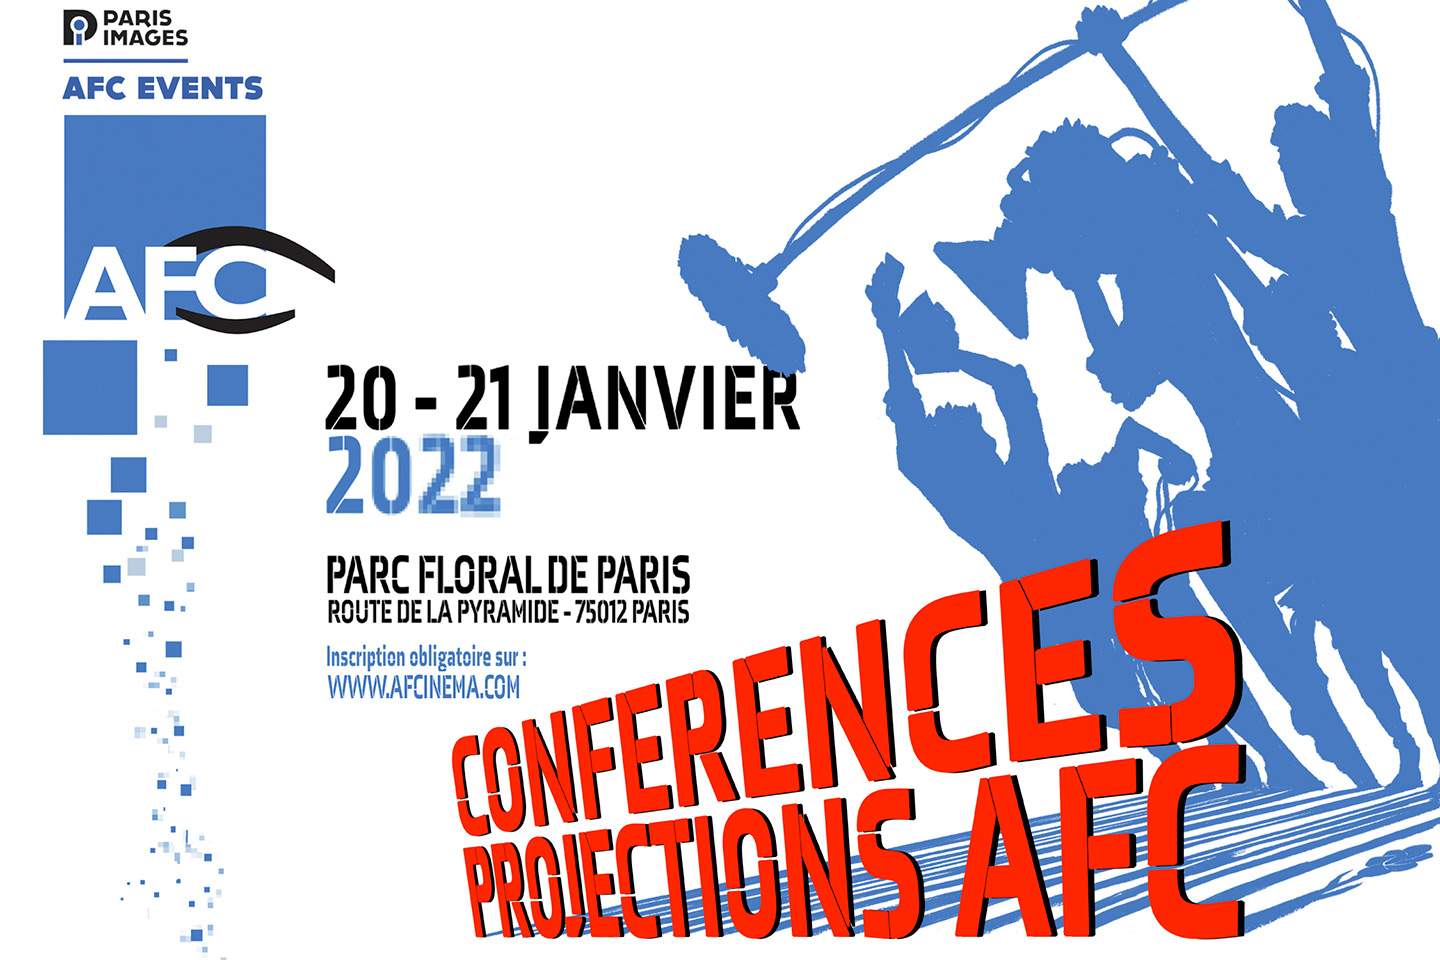 Les Projections-Conférences du Paris Images AFC Events 2022